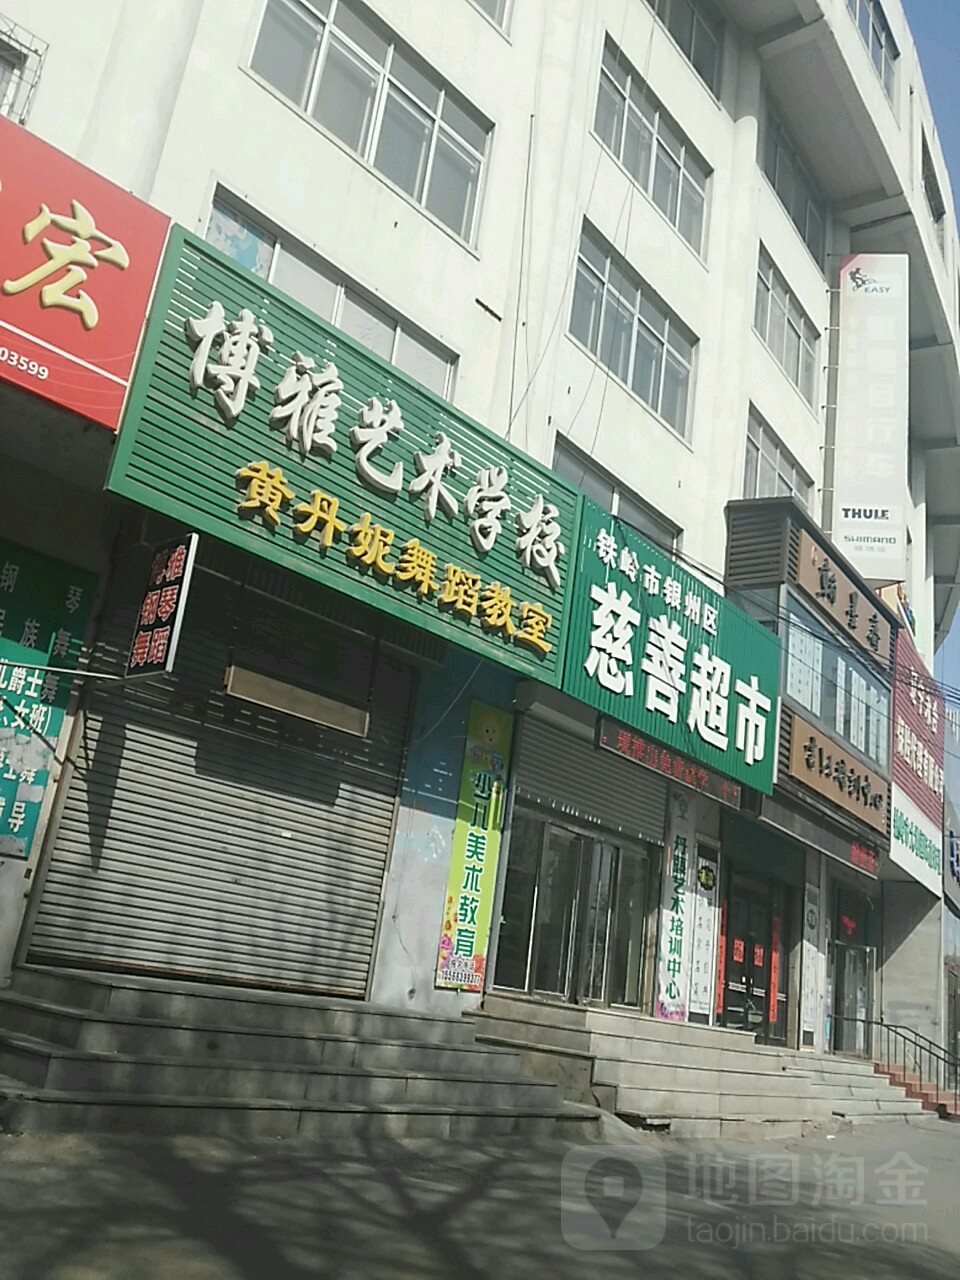 博雅藝術學校(柴河街南段)